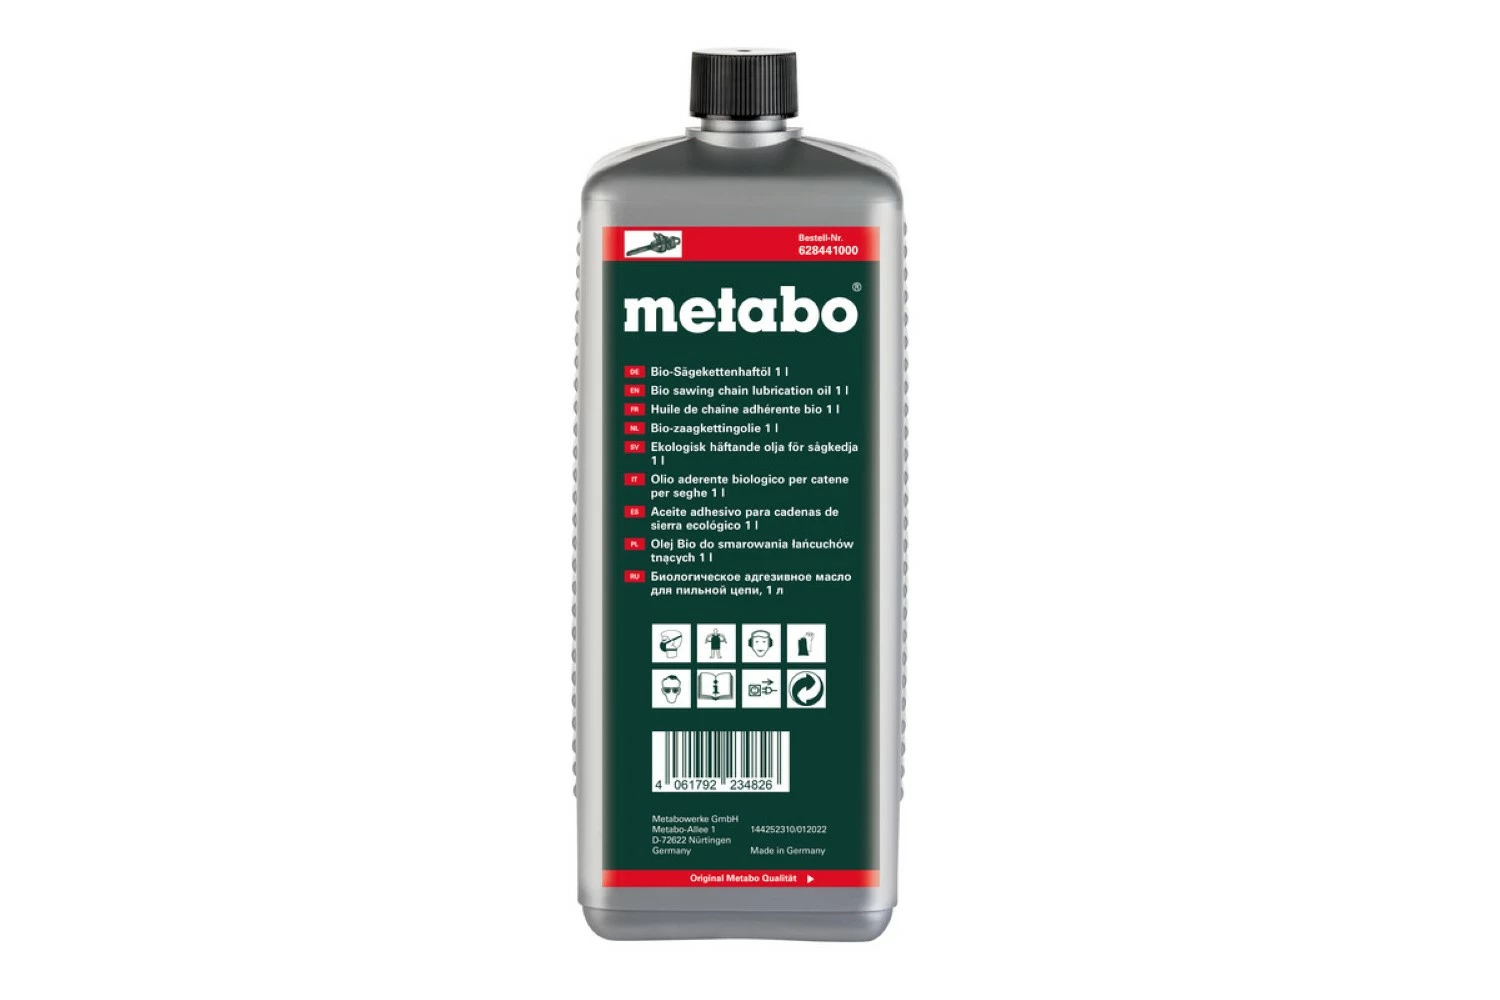 Metabo 628441000 Huile pour chaîne de tronçonneuse bio - 1L-image